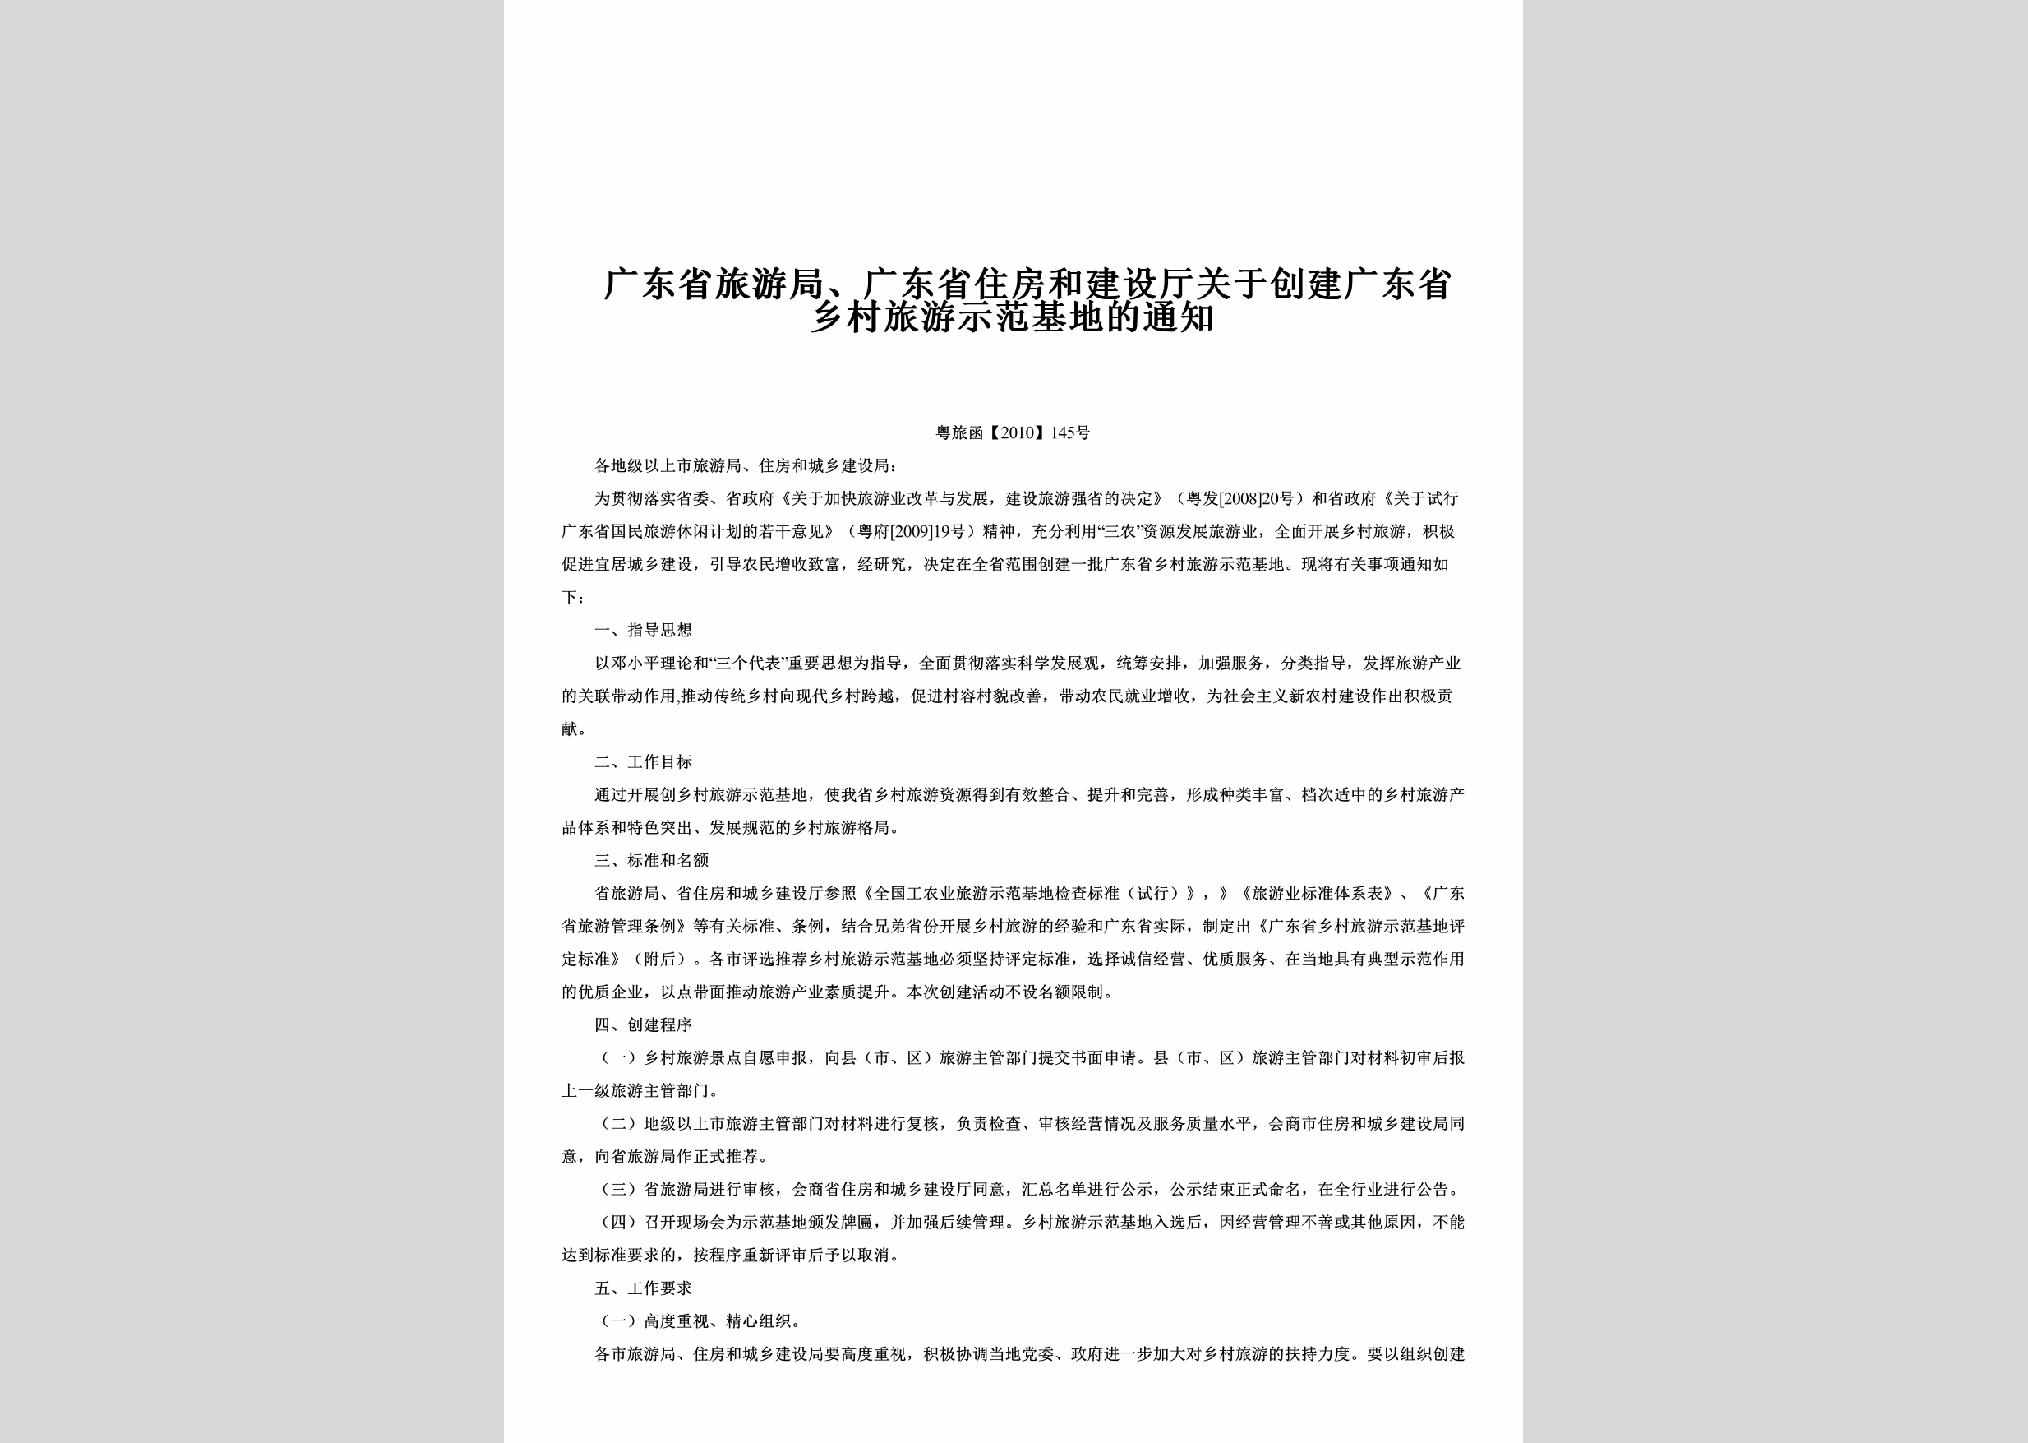 粤旅函[2010]145号：关于创建广东省乡村旅游示范基地的通知